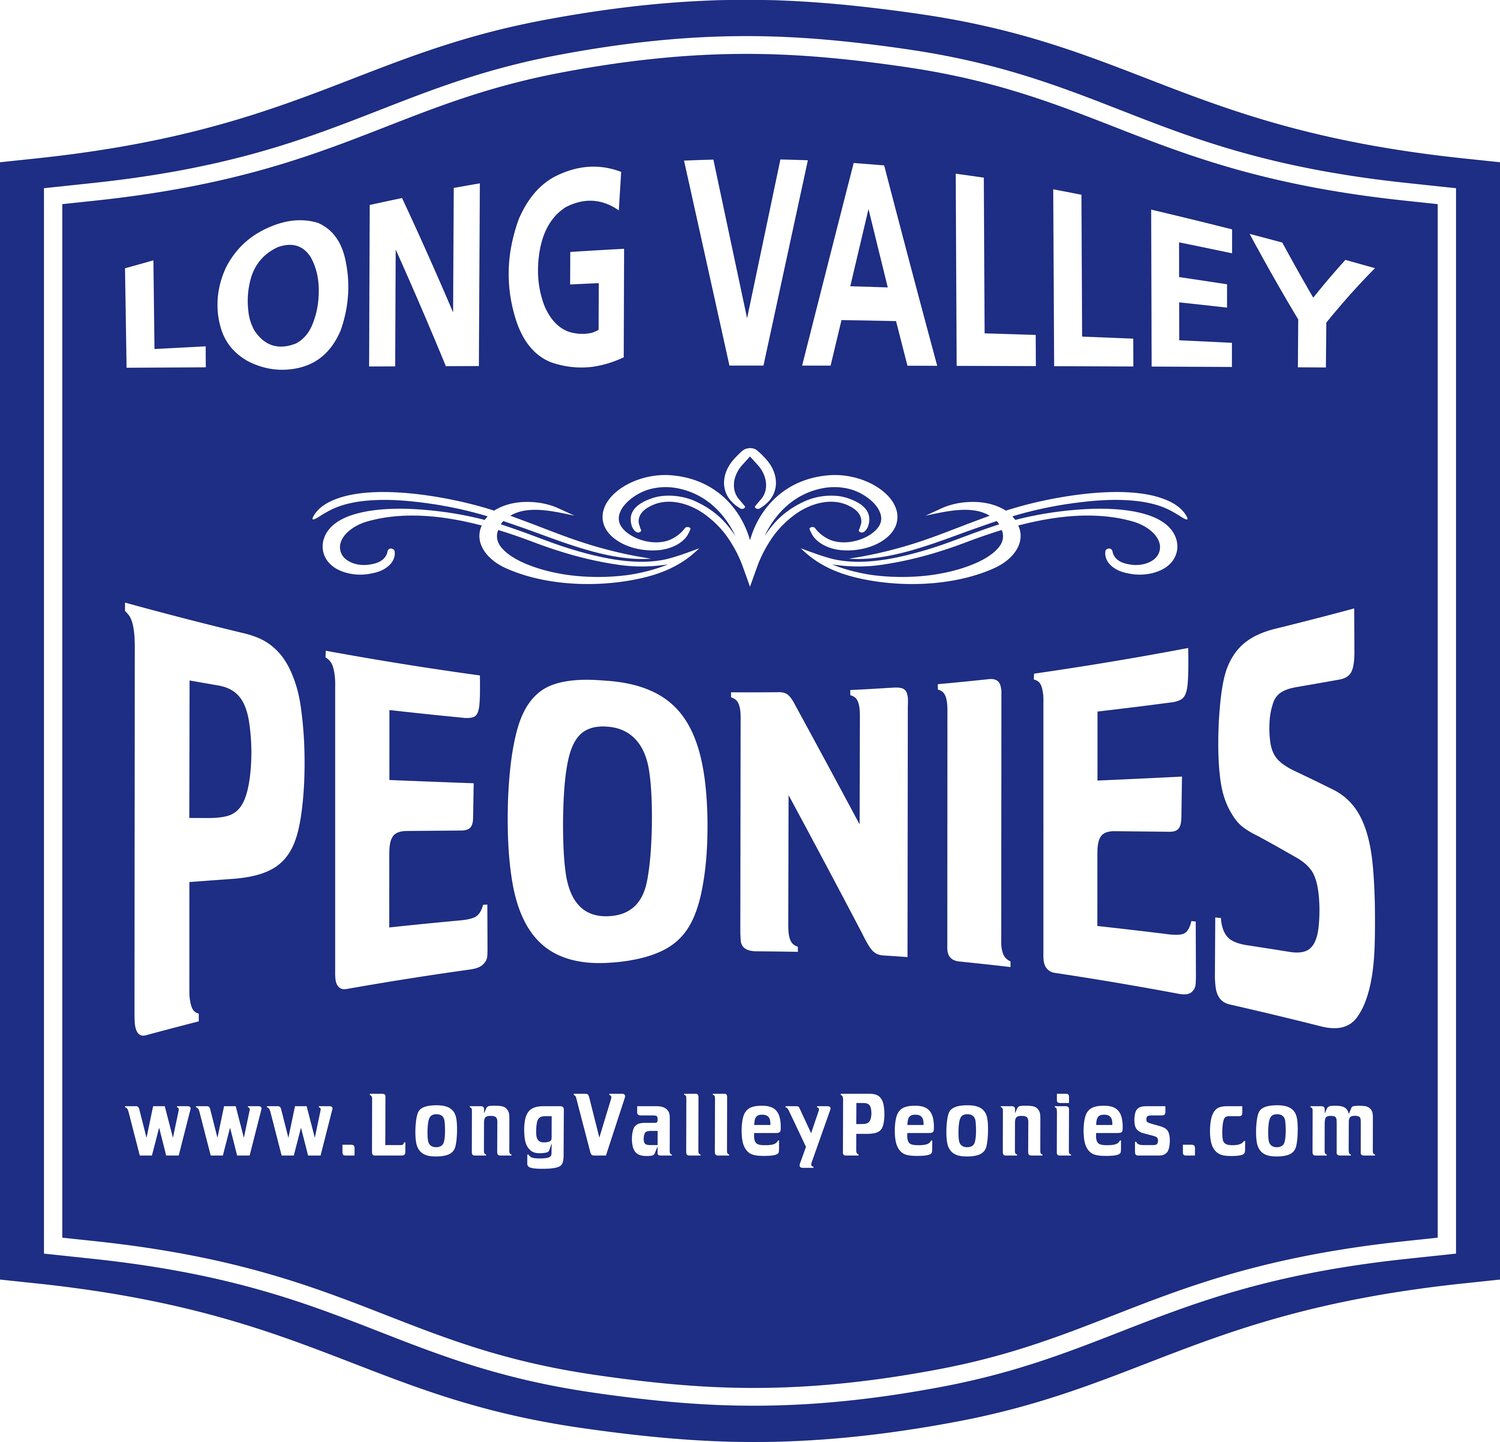 Long Valley Peonies